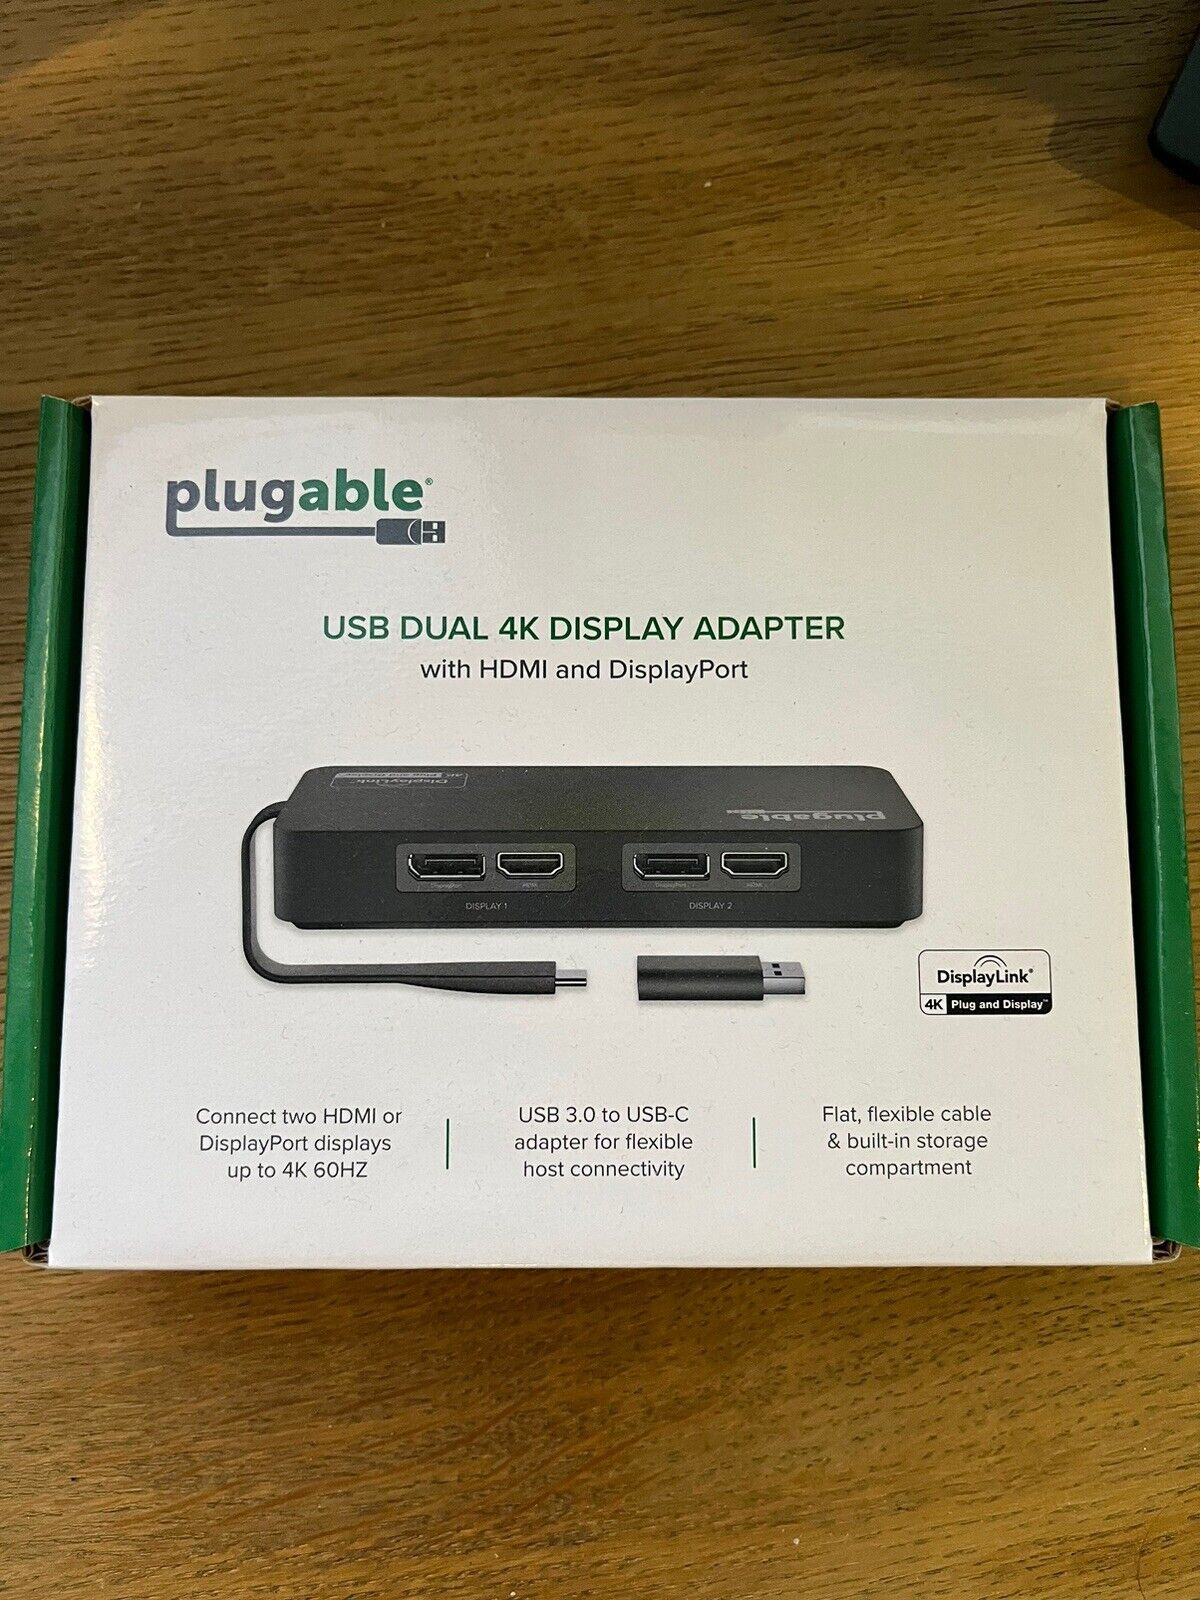 Plugable Technologies - Plugable USB Dual 4K Display Adapter